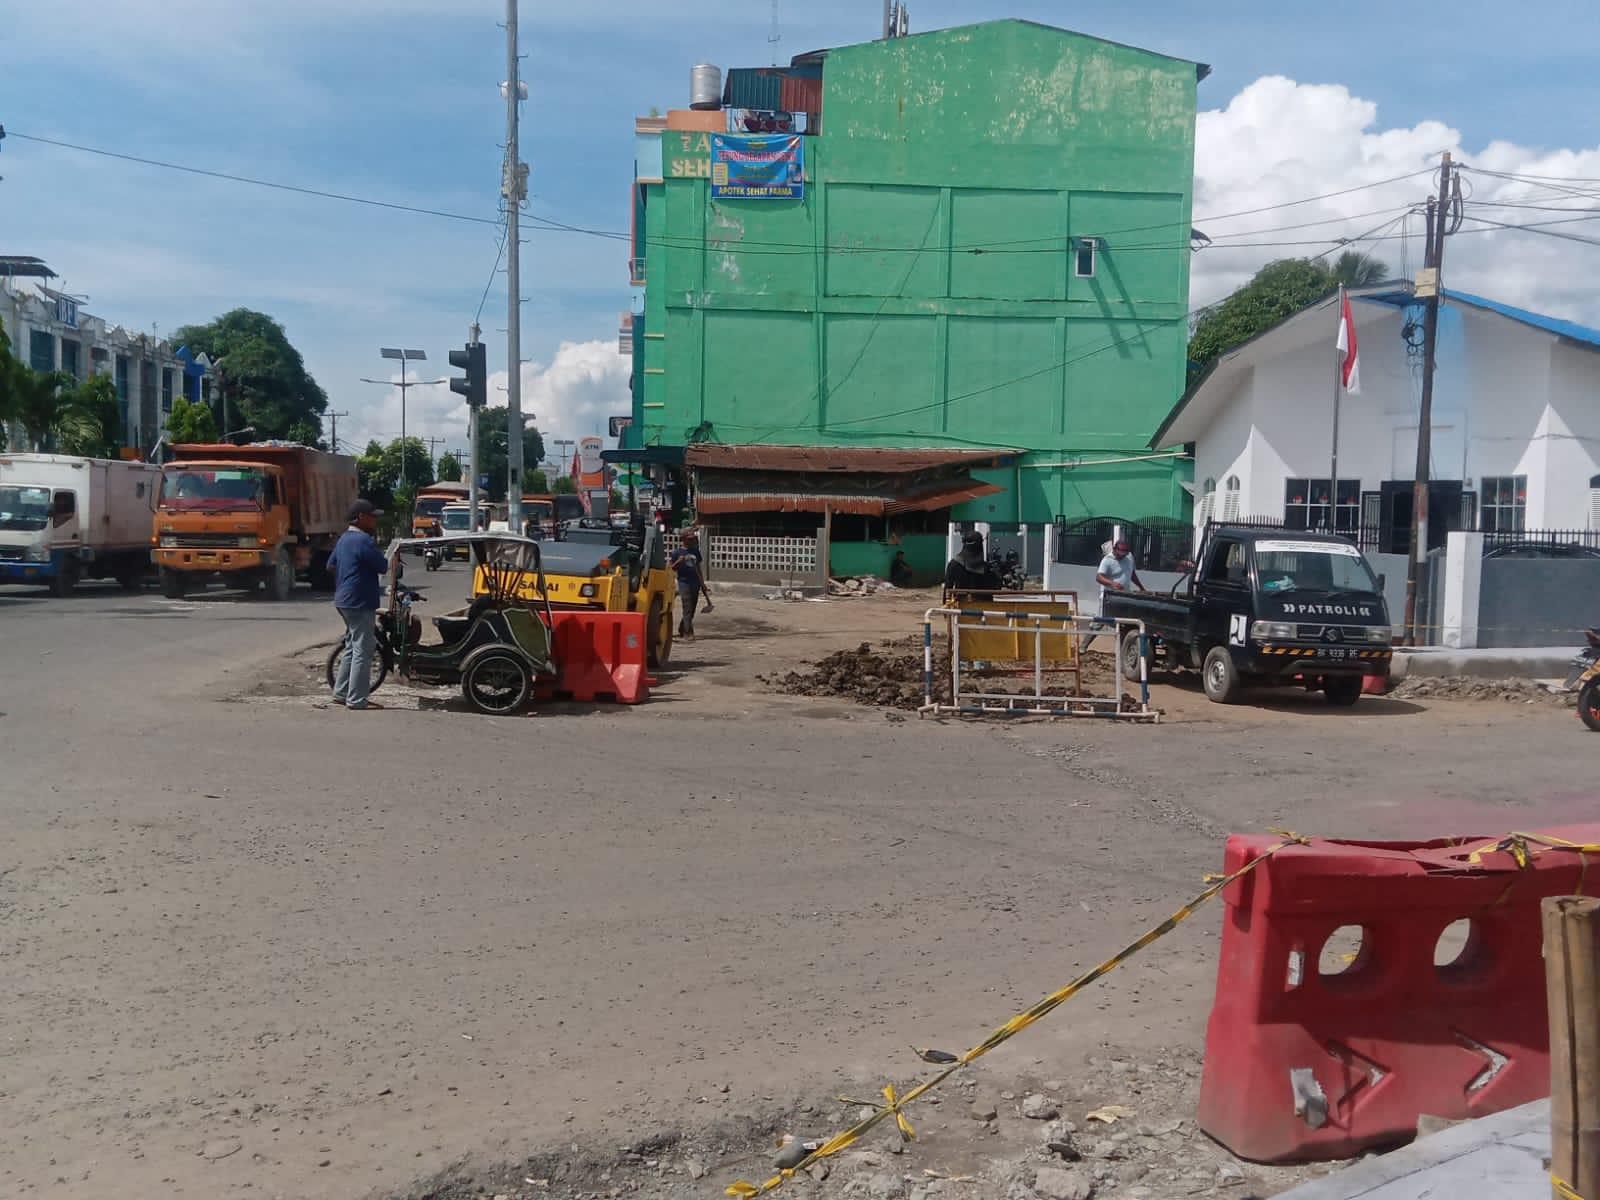 Dinas PUPR Binjai Bangun Proyek Pelebaran Jalan diduga Anggaran Tidak Jelas dan Banyak Penyelewengan